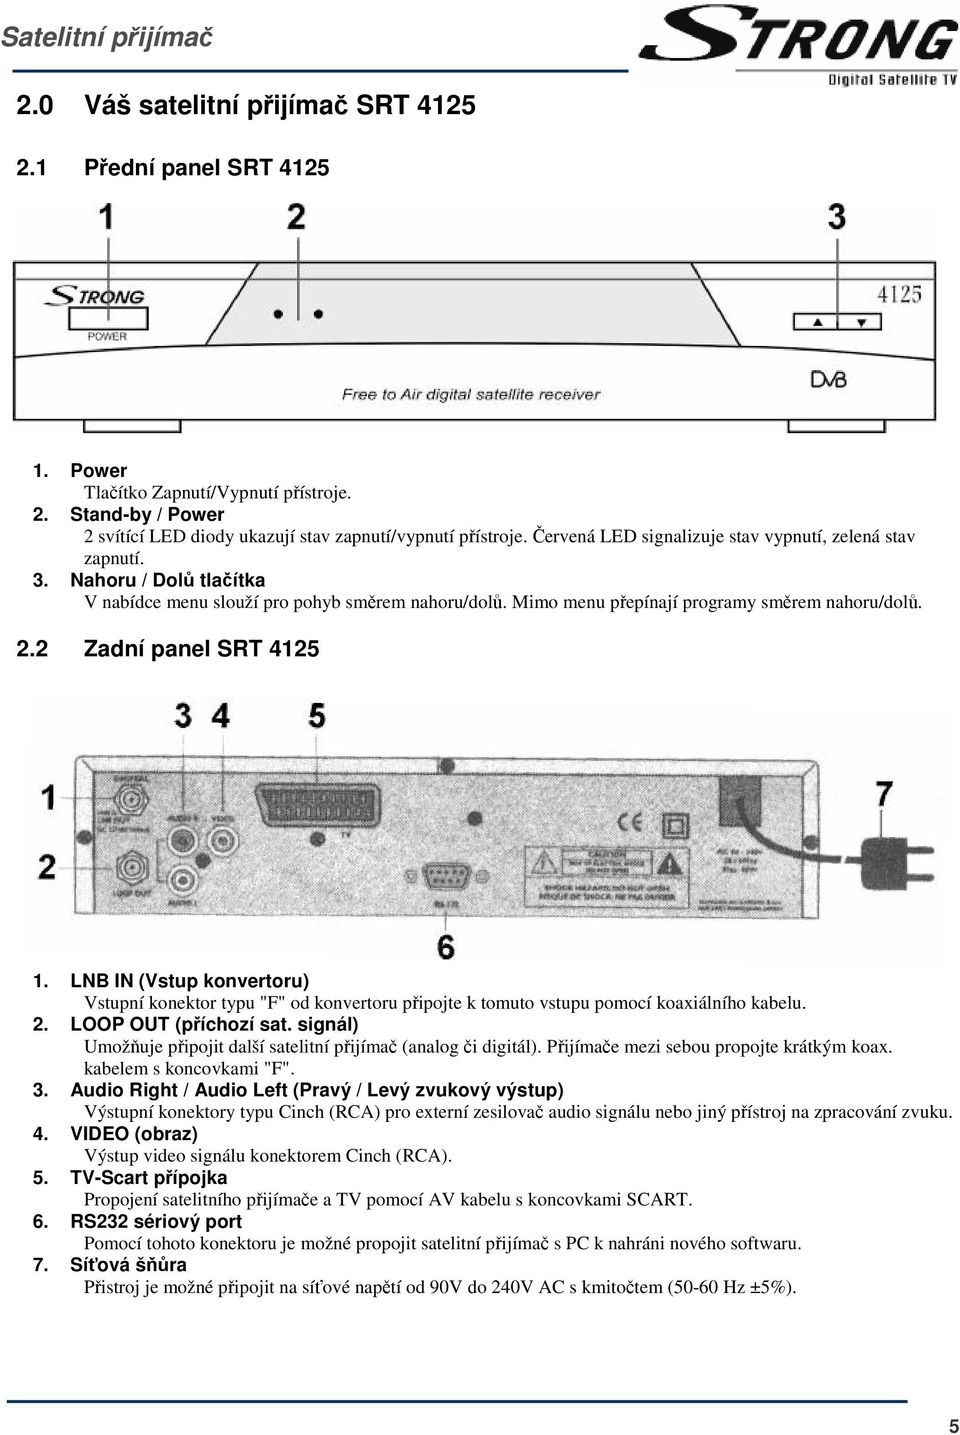 2 Zadní panel SRT 4125 1. LNB IN (Vstup konvertoru) Vstupní konektor typu "F" od konvertoru pipojte k tomuto vstupu pomocí koaxiálního kabelu. 2. LOOP OUT (píchozí sat.